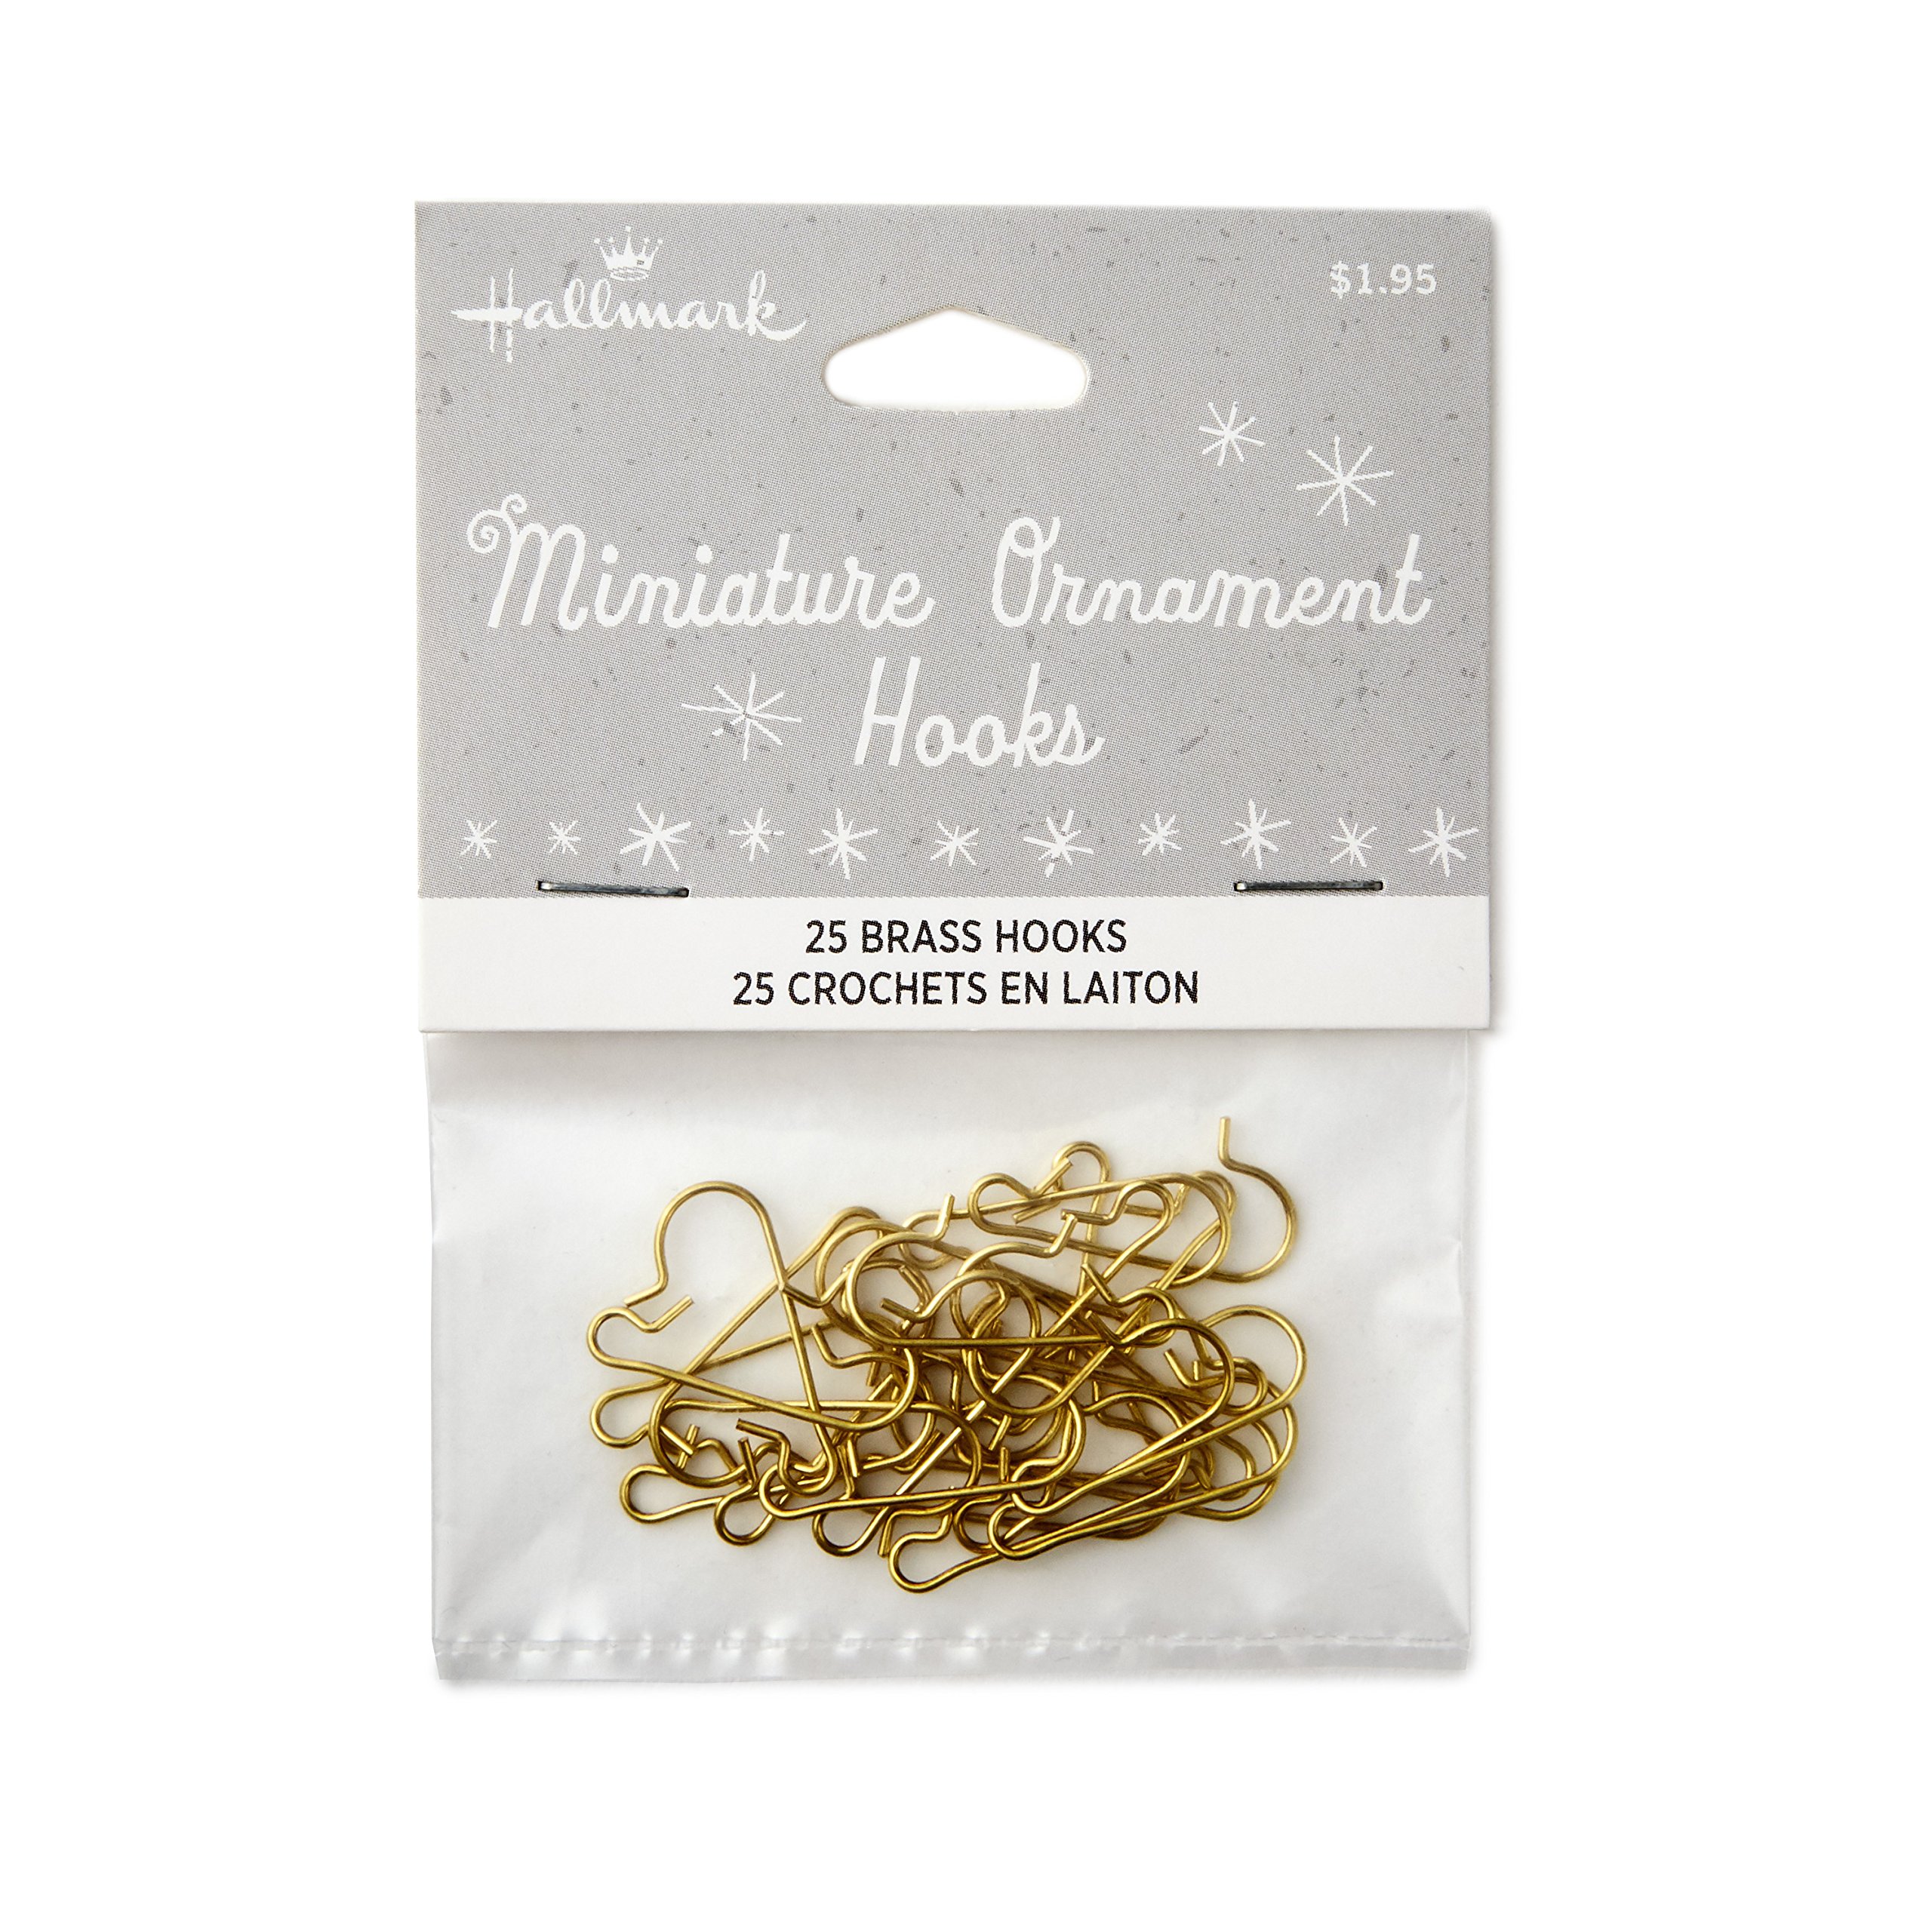 miniature ornament hooks